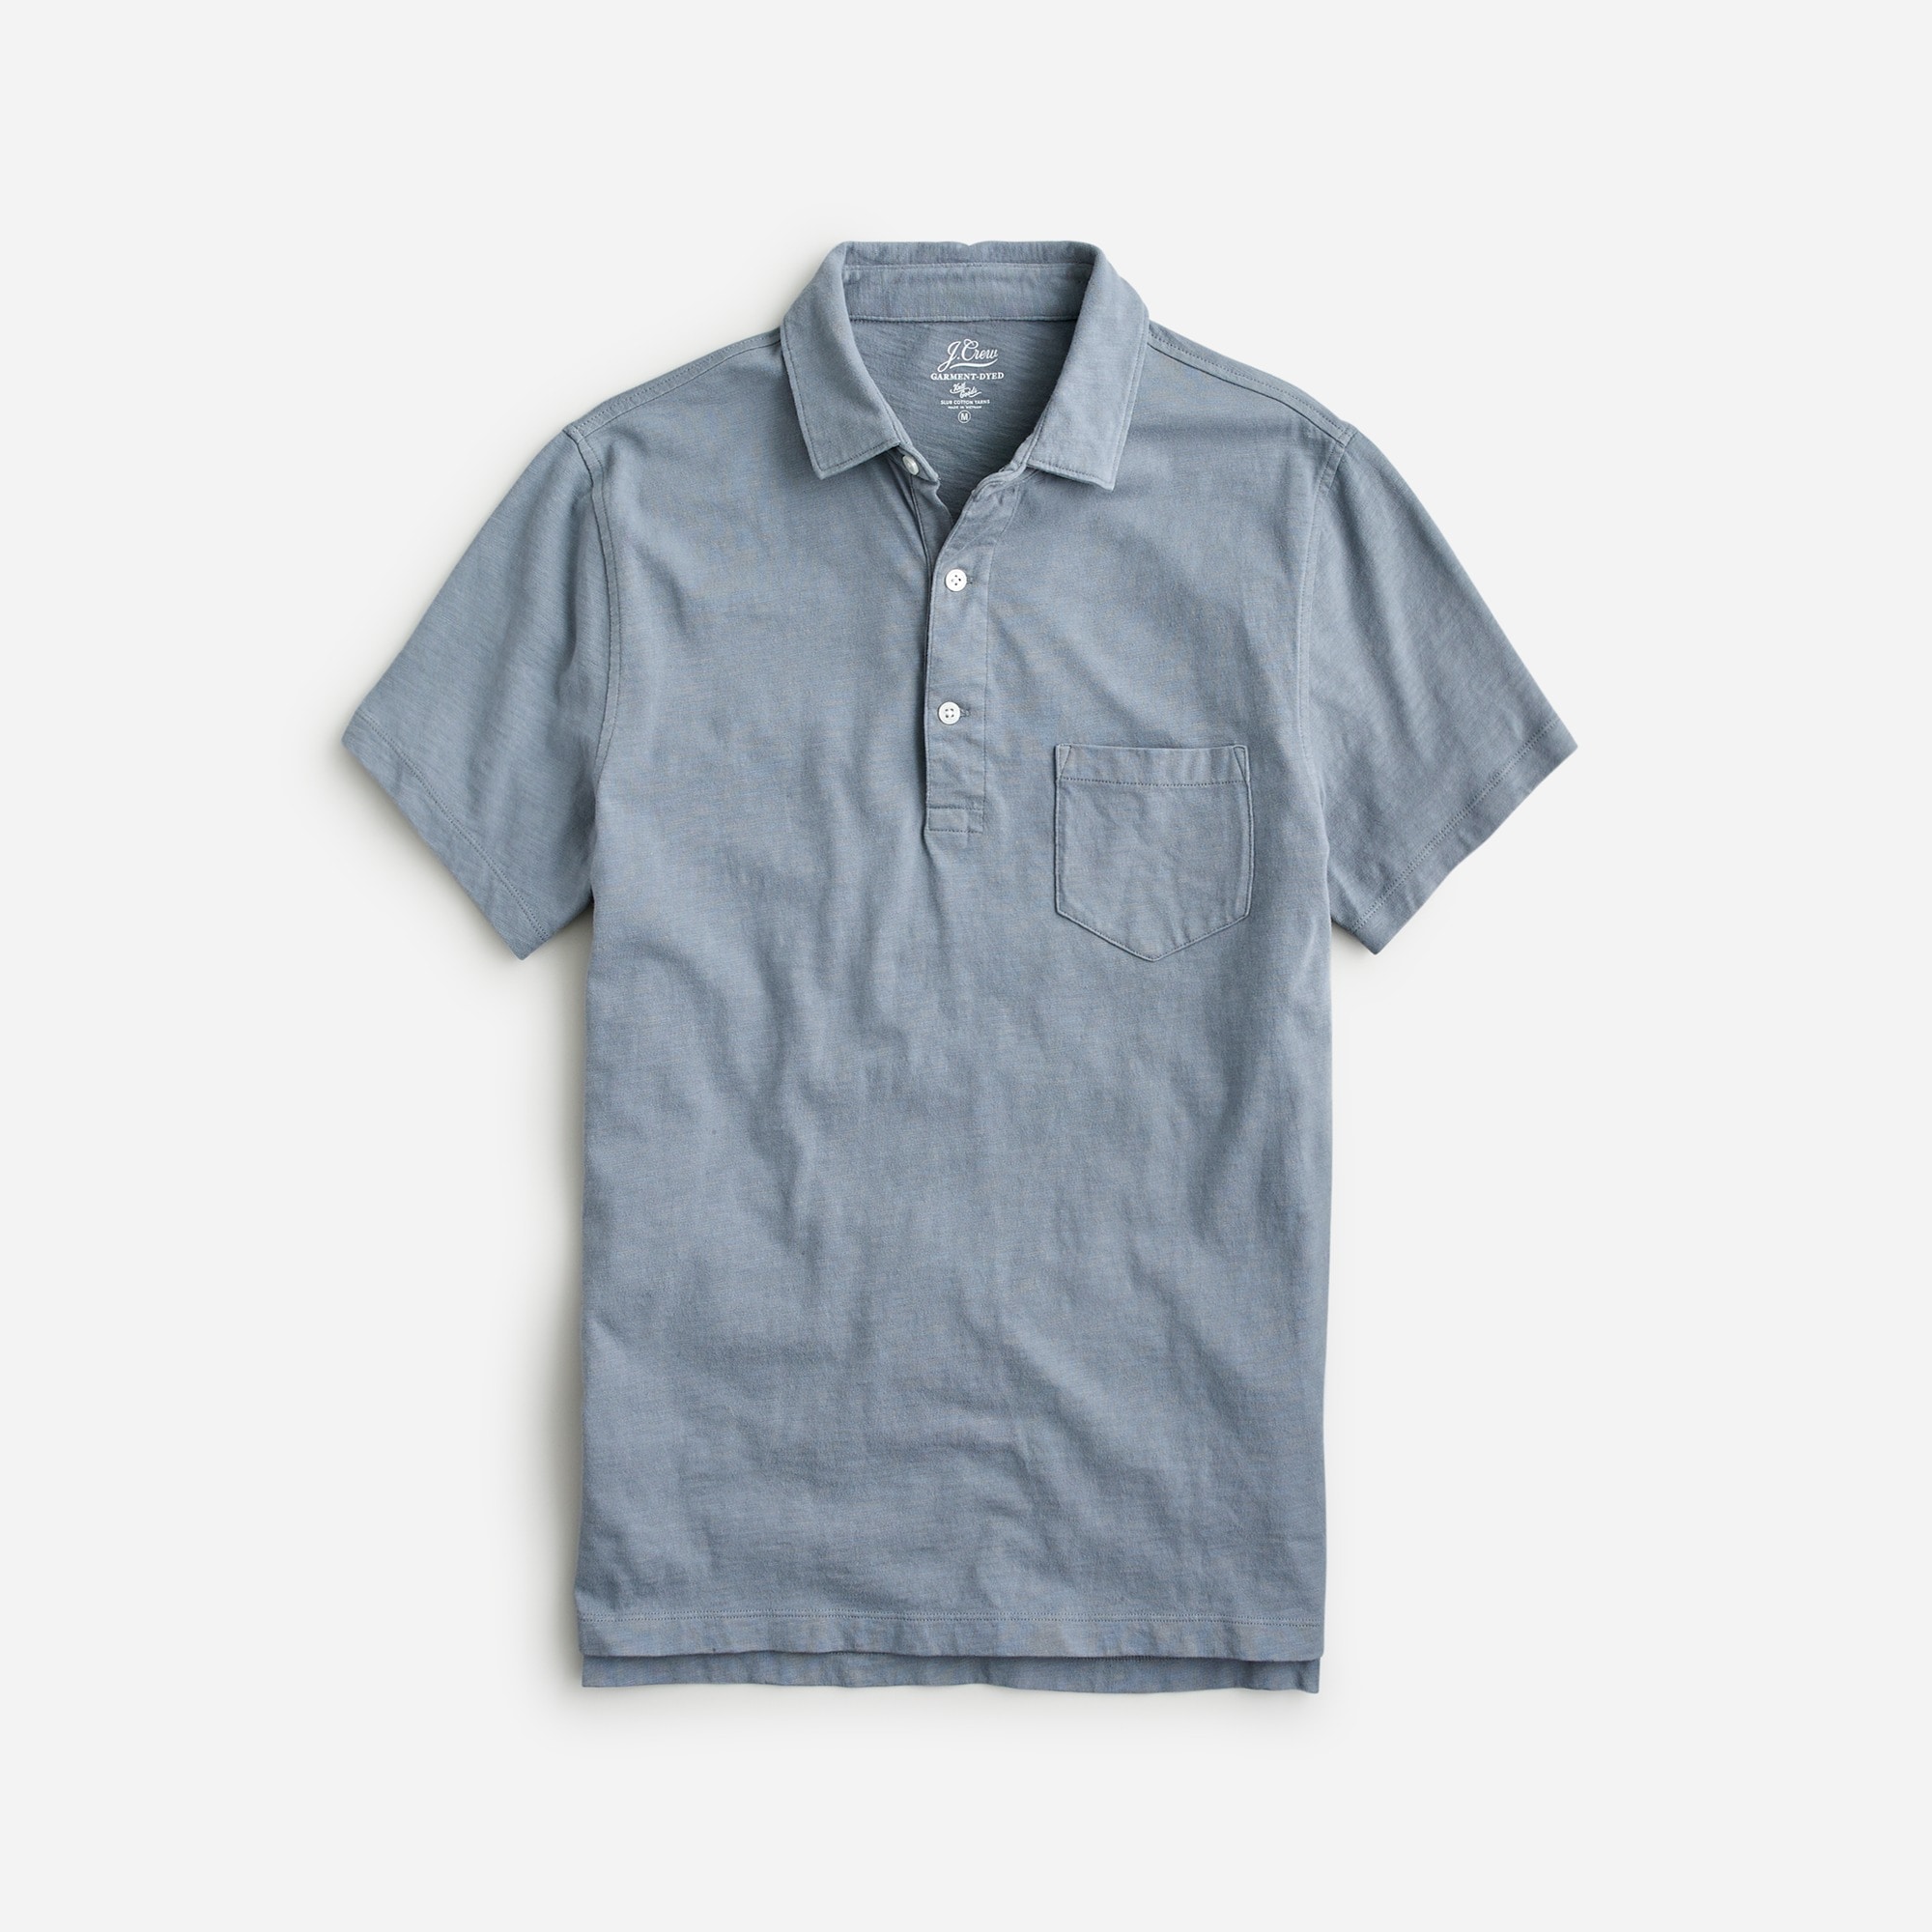 mens Garment-dyed slub cotton pocket polo shirt